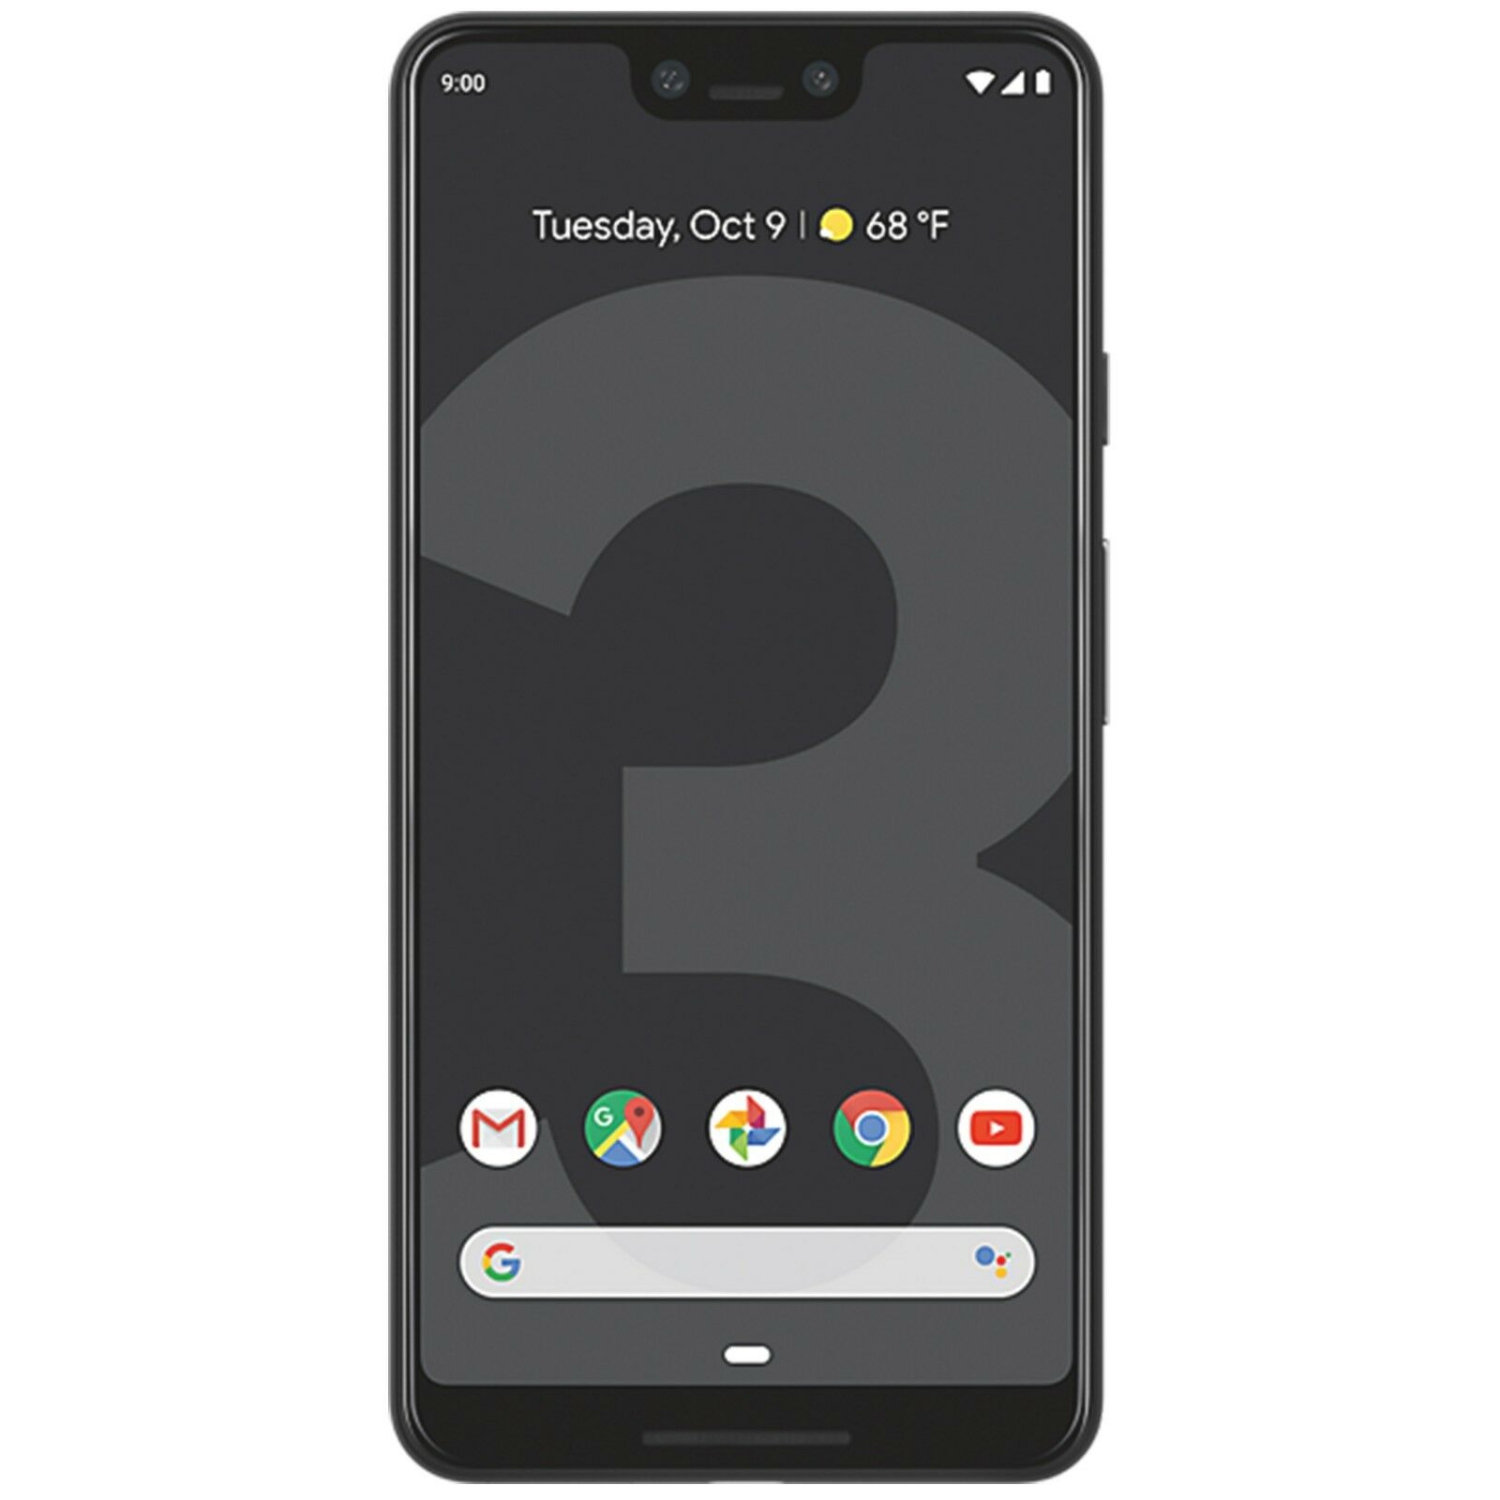 Google Pixel 3 XL 128GB Smartphone - Just Black - Unlocked - New 